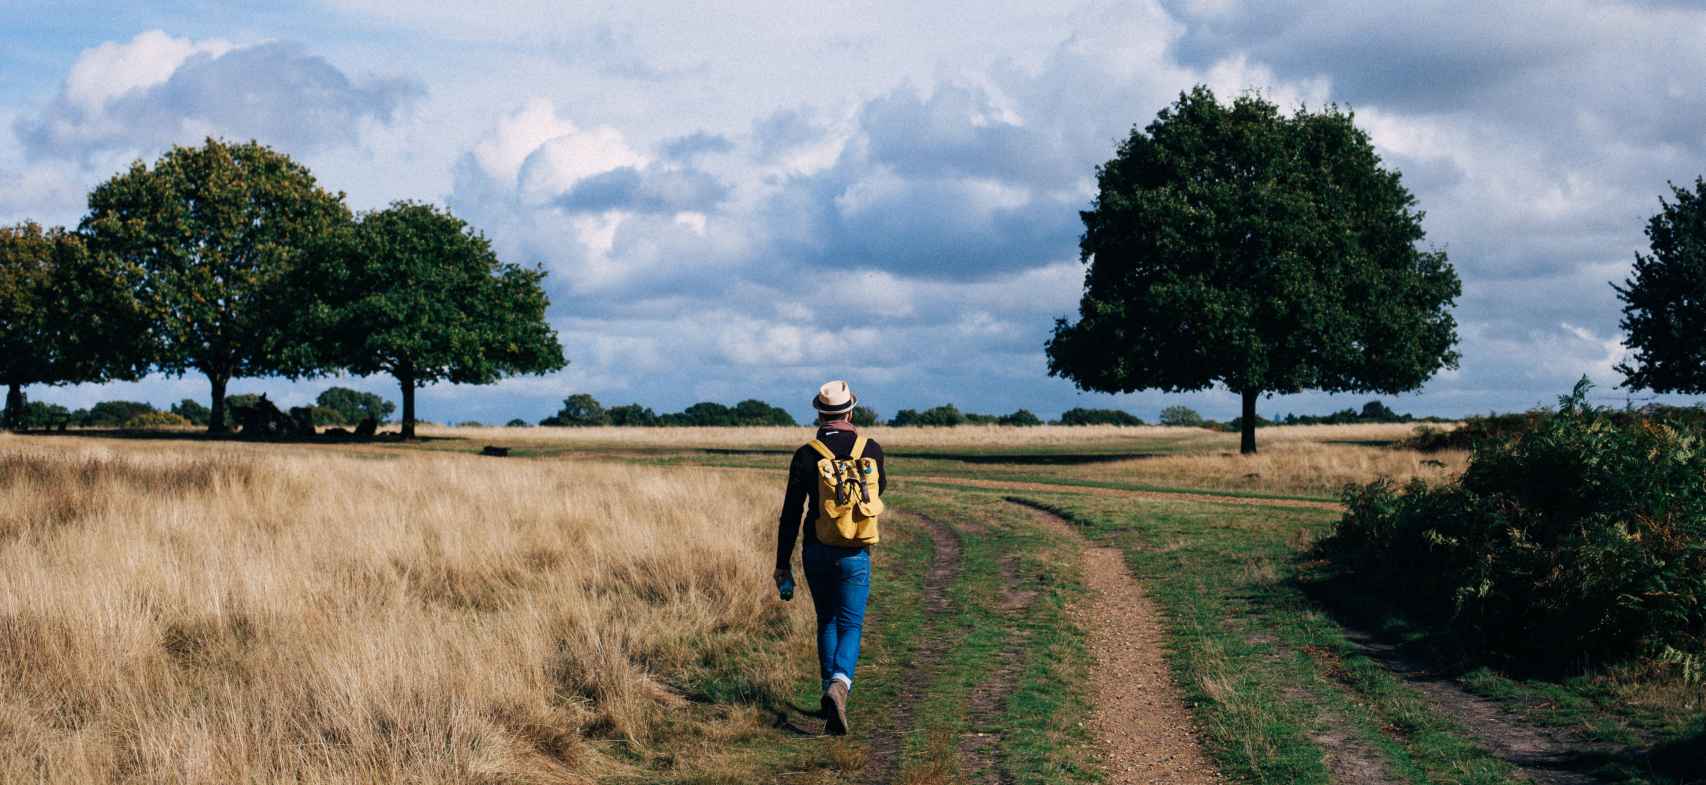 Persona caminando en un campo